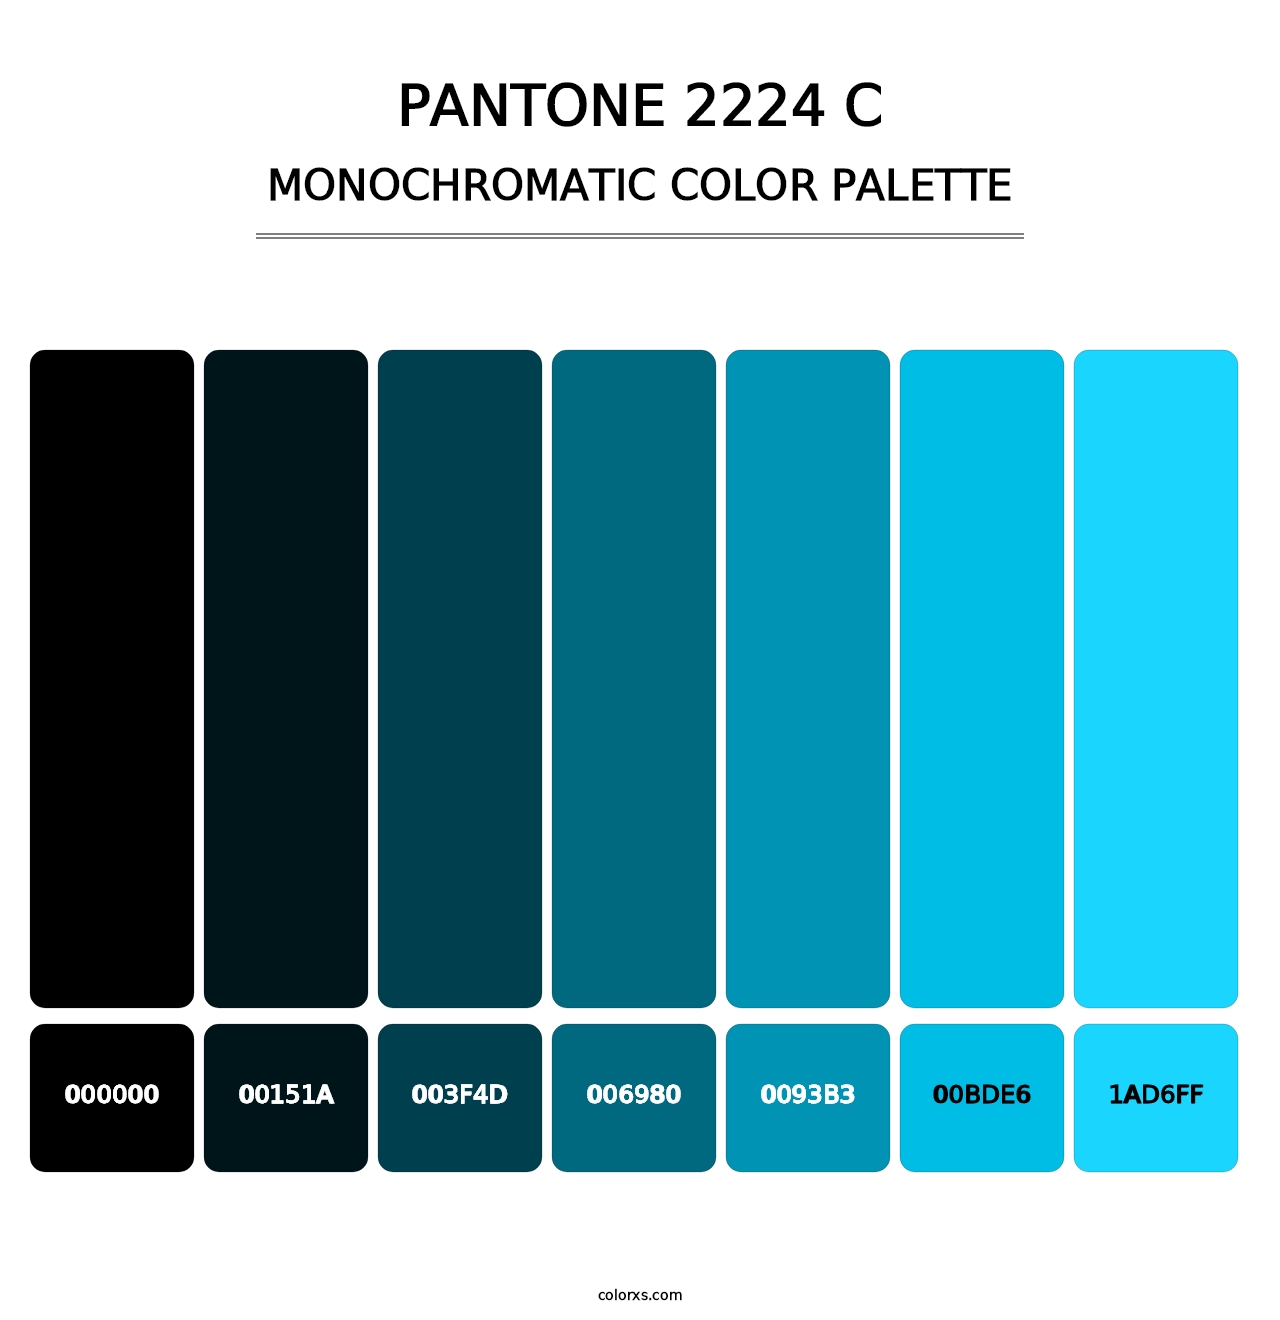 PANTONE 2224 C - Monochromatic Color Palette